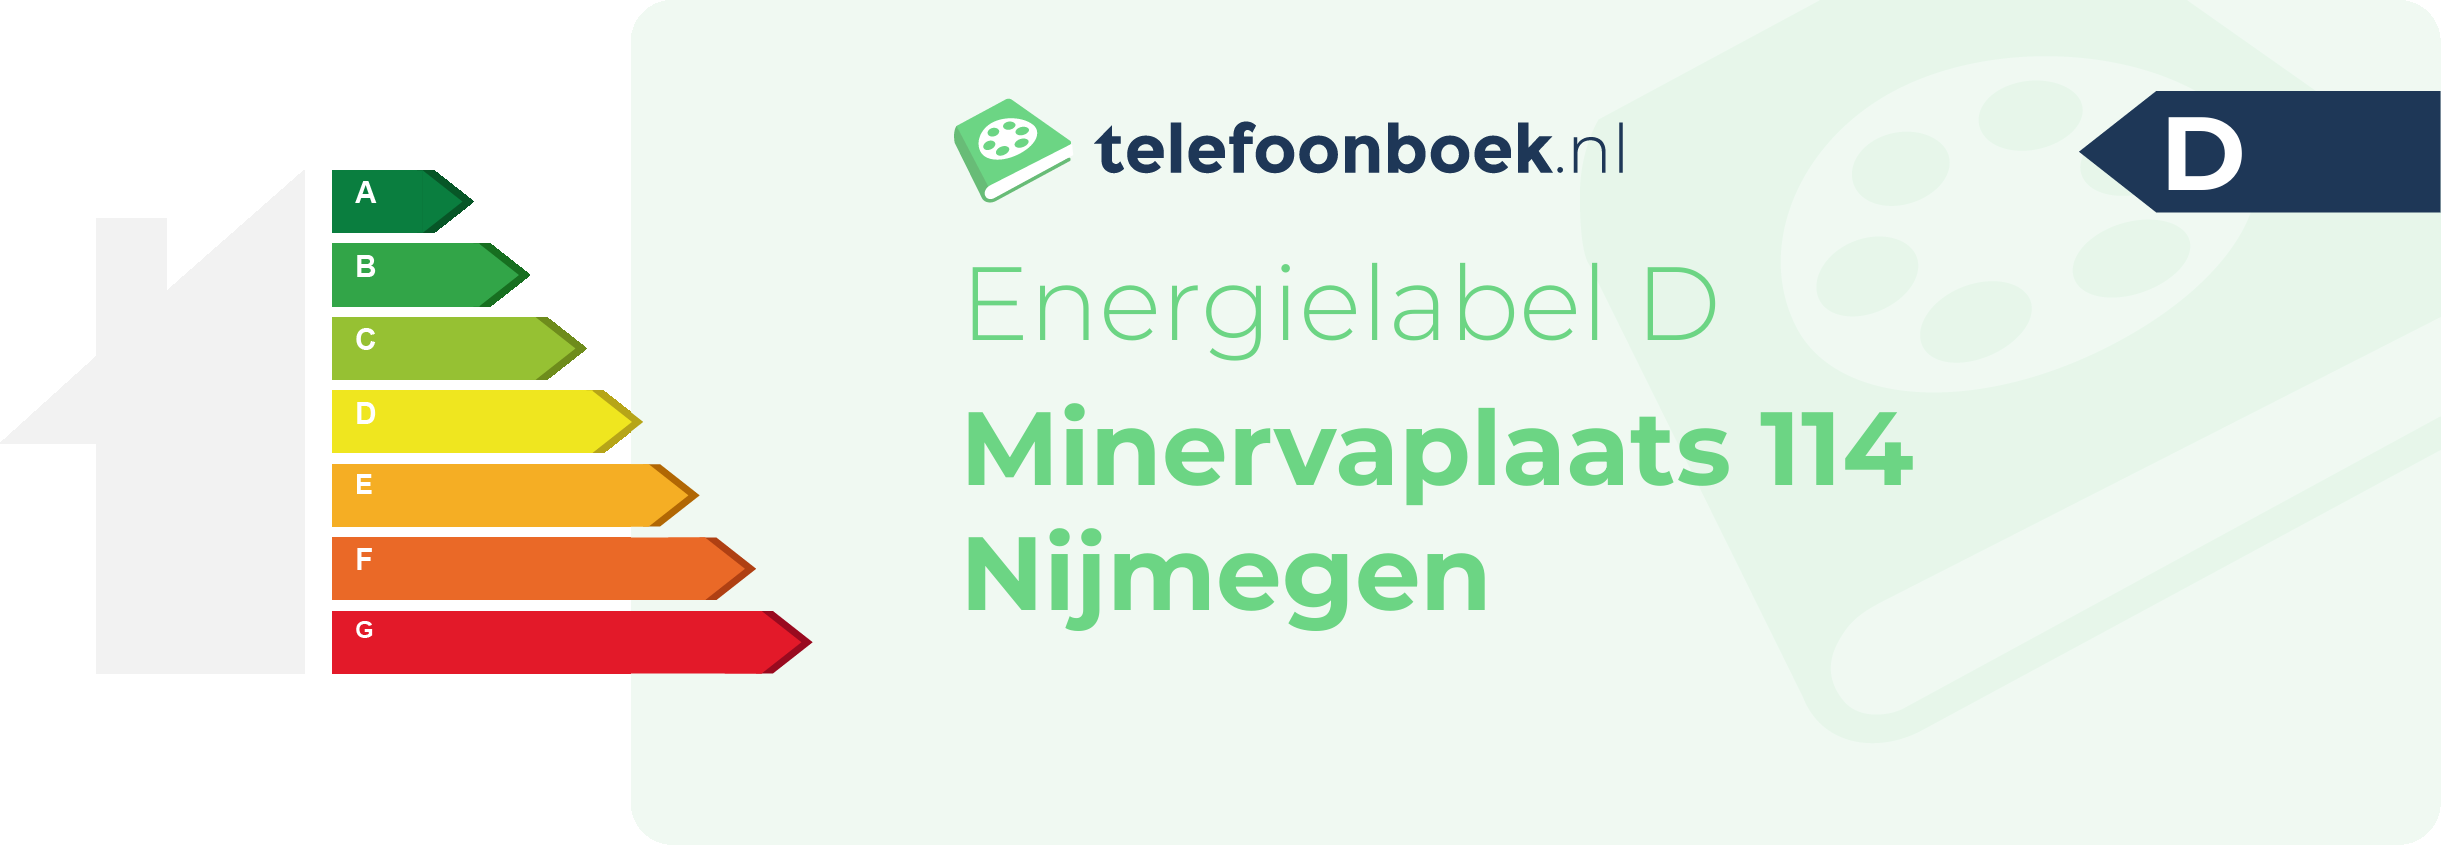 Energielabel Minervaplaats 114 Nijmegen